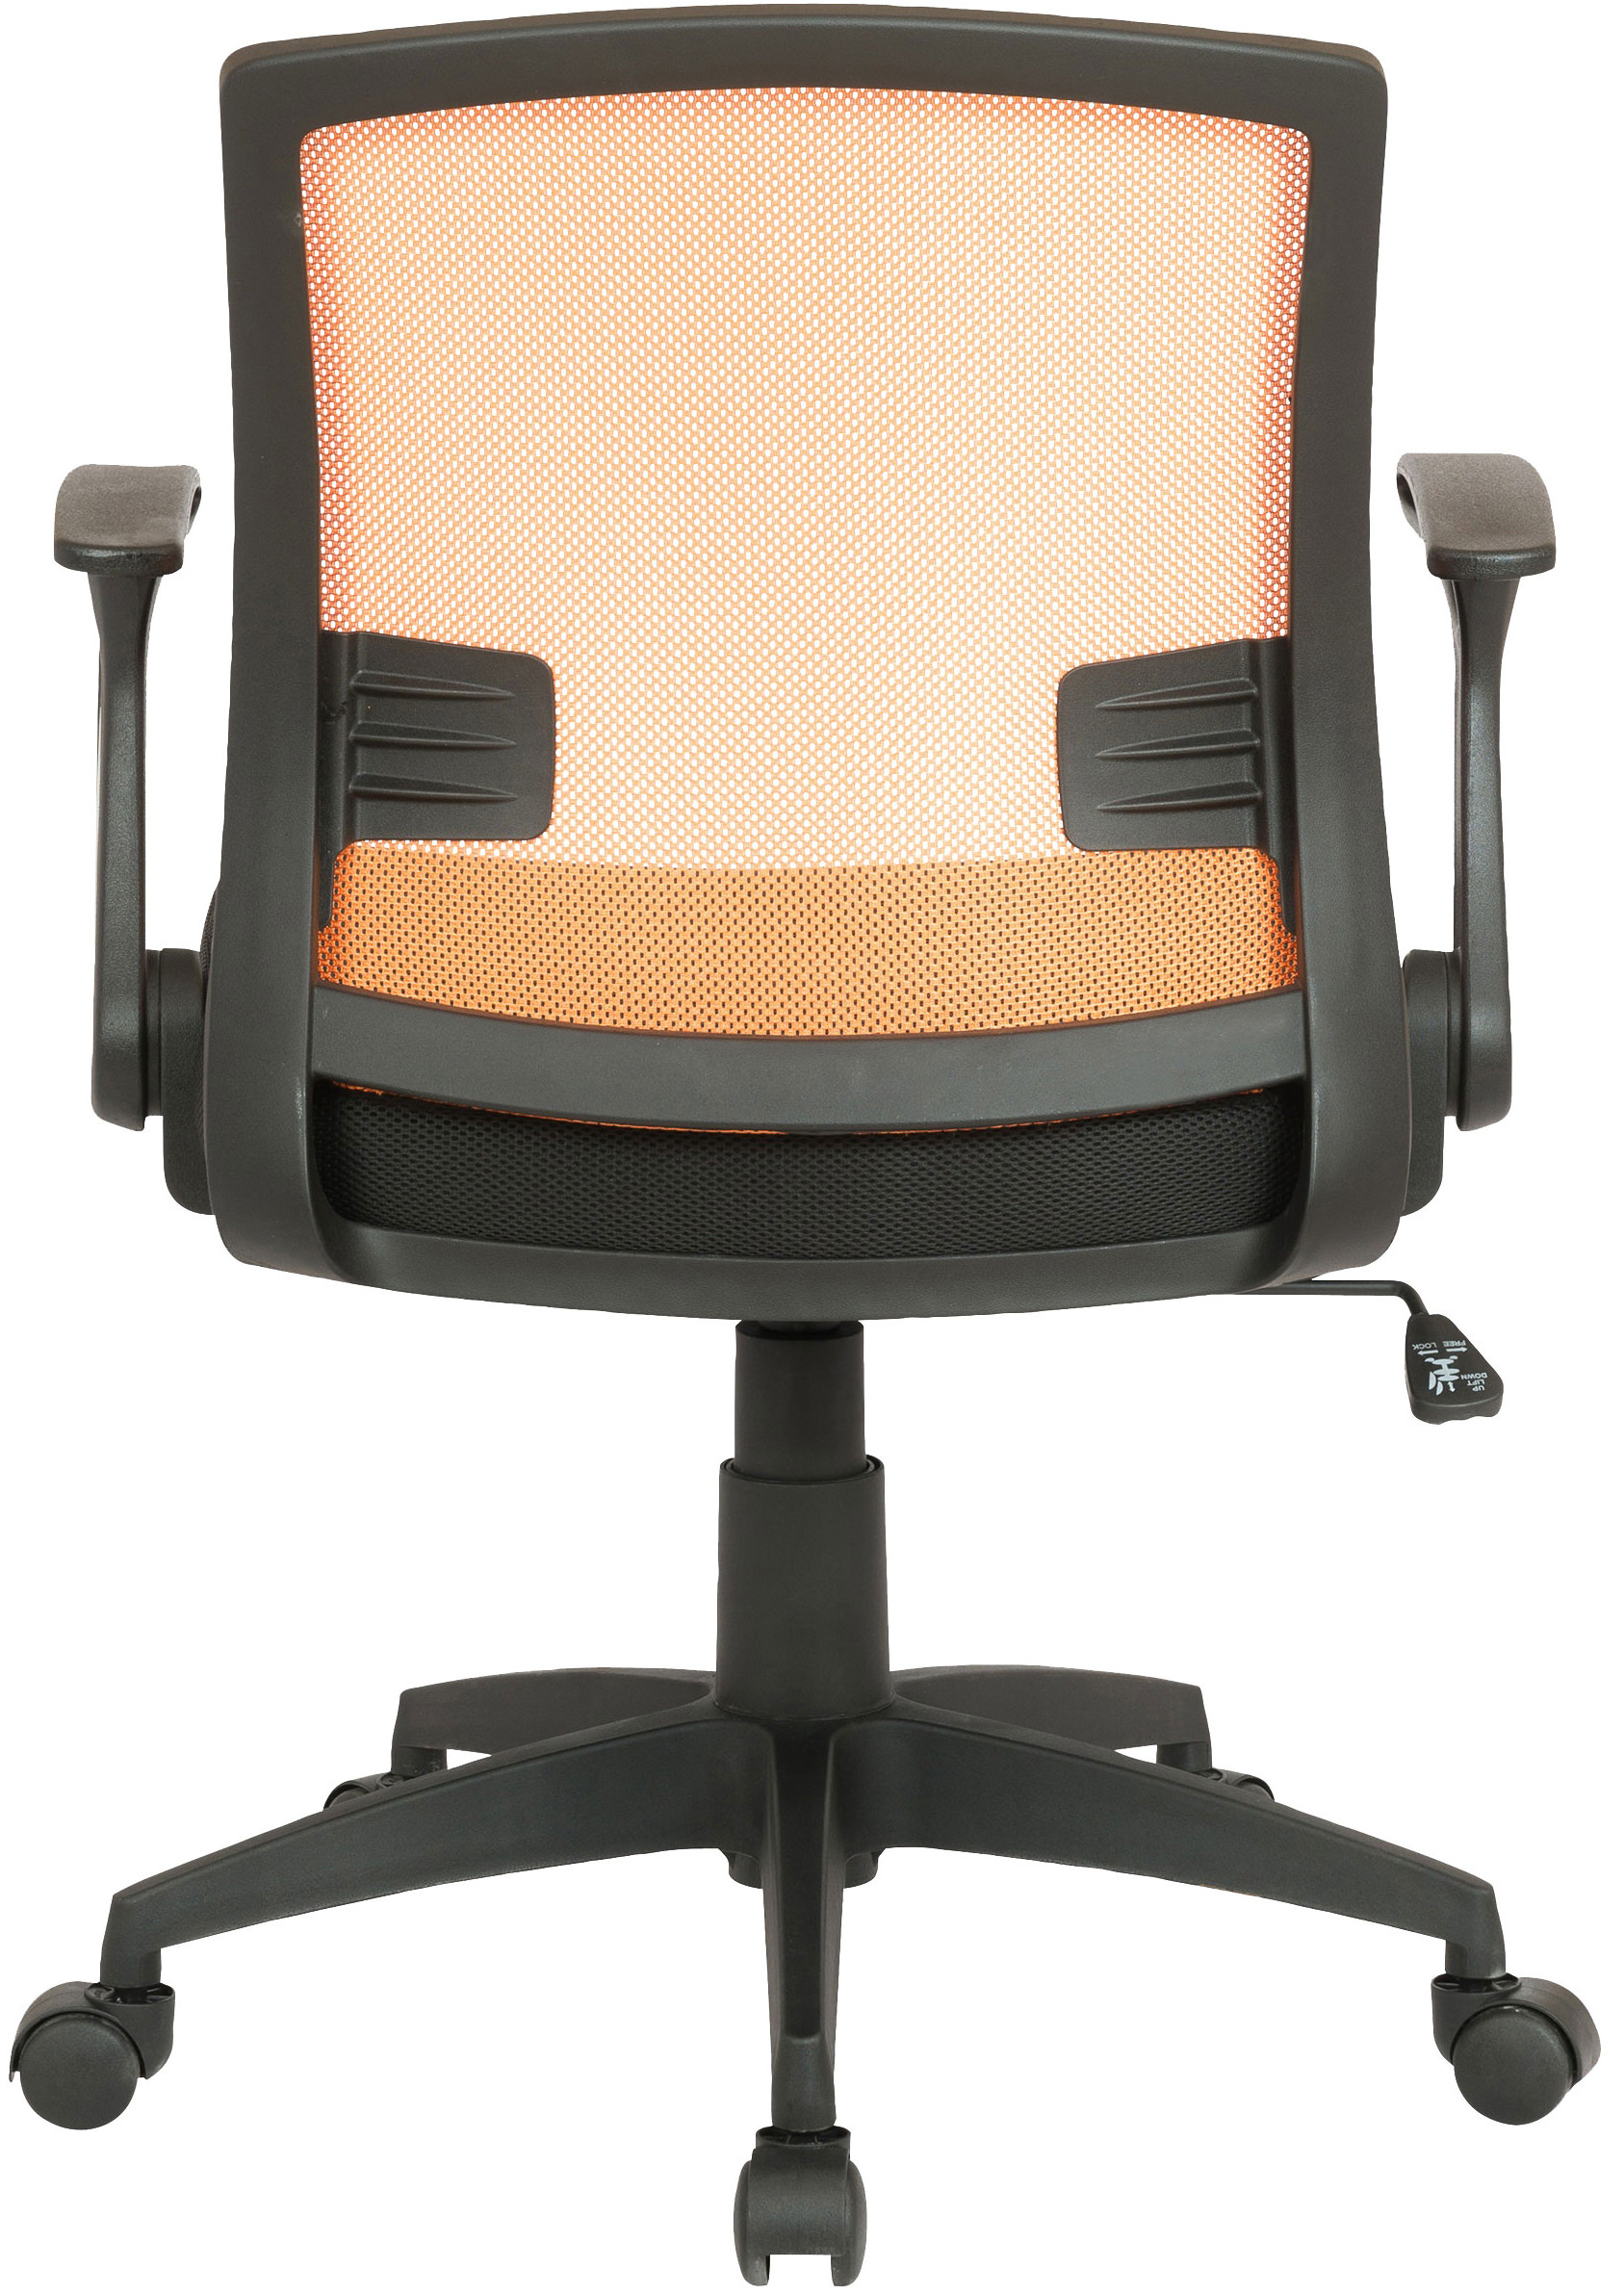 Renton CLP schwarz/orange Bürostuhl Bürostuhl,